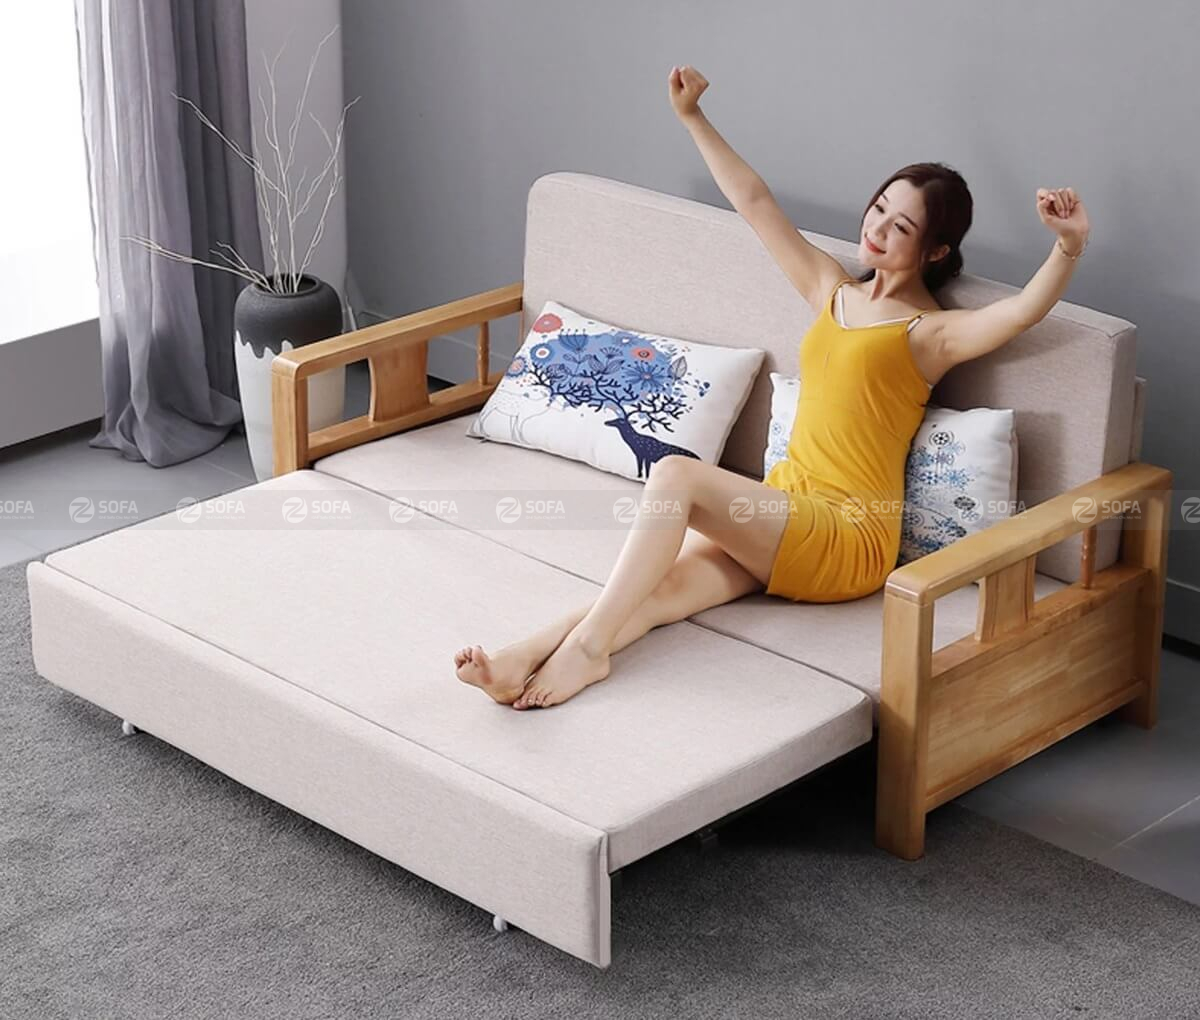 Địa chỉ cung cấp sofa bed tốt nhất Sài Gòn